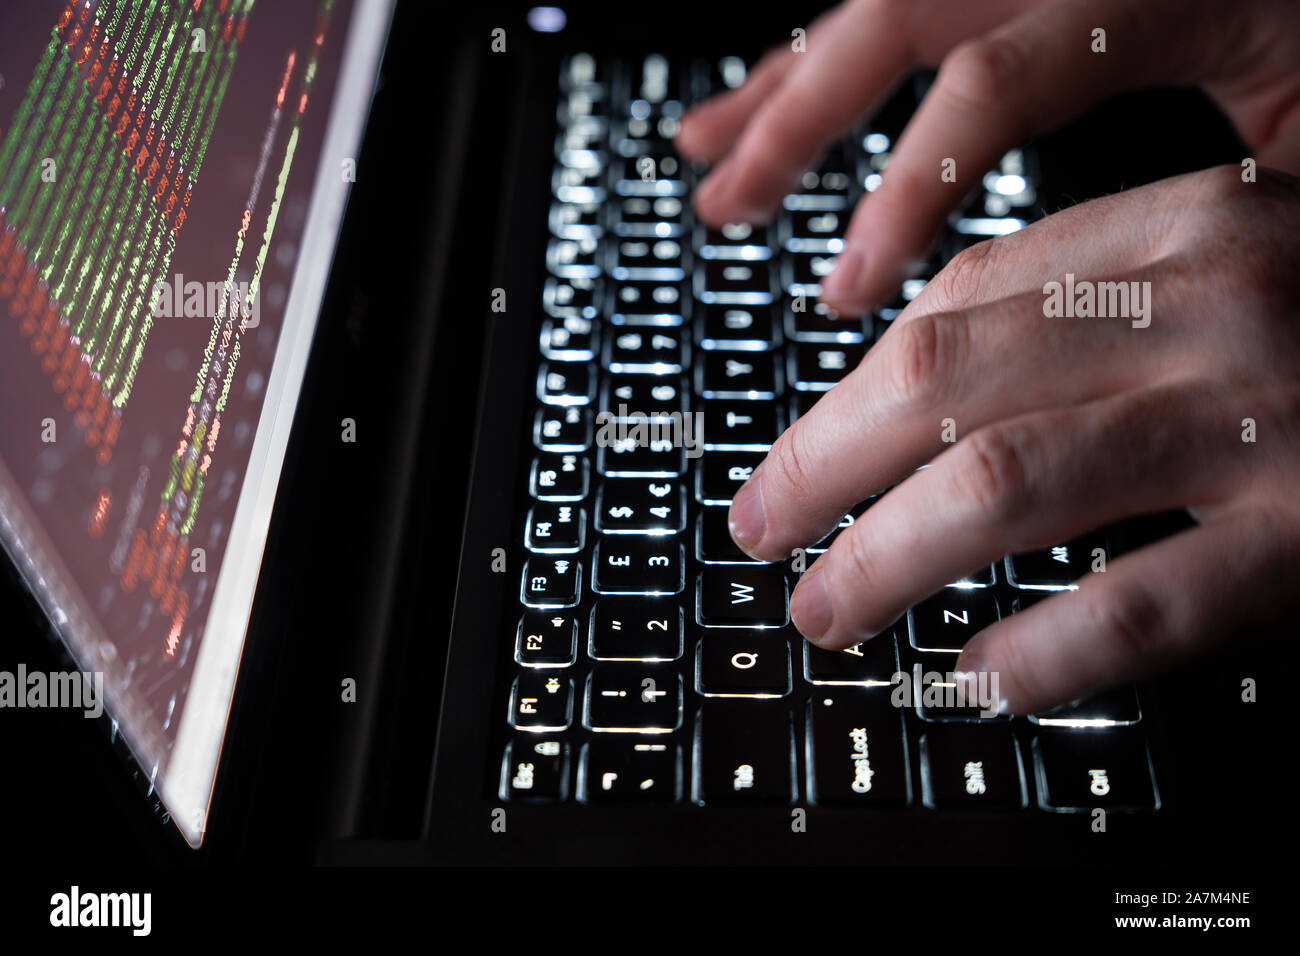 La saisie sur un clavier d'ordinateur - Notion de cybersécurité, phishing, piratage, attaque, web, virus et chevaux de Troie Banque D'Images